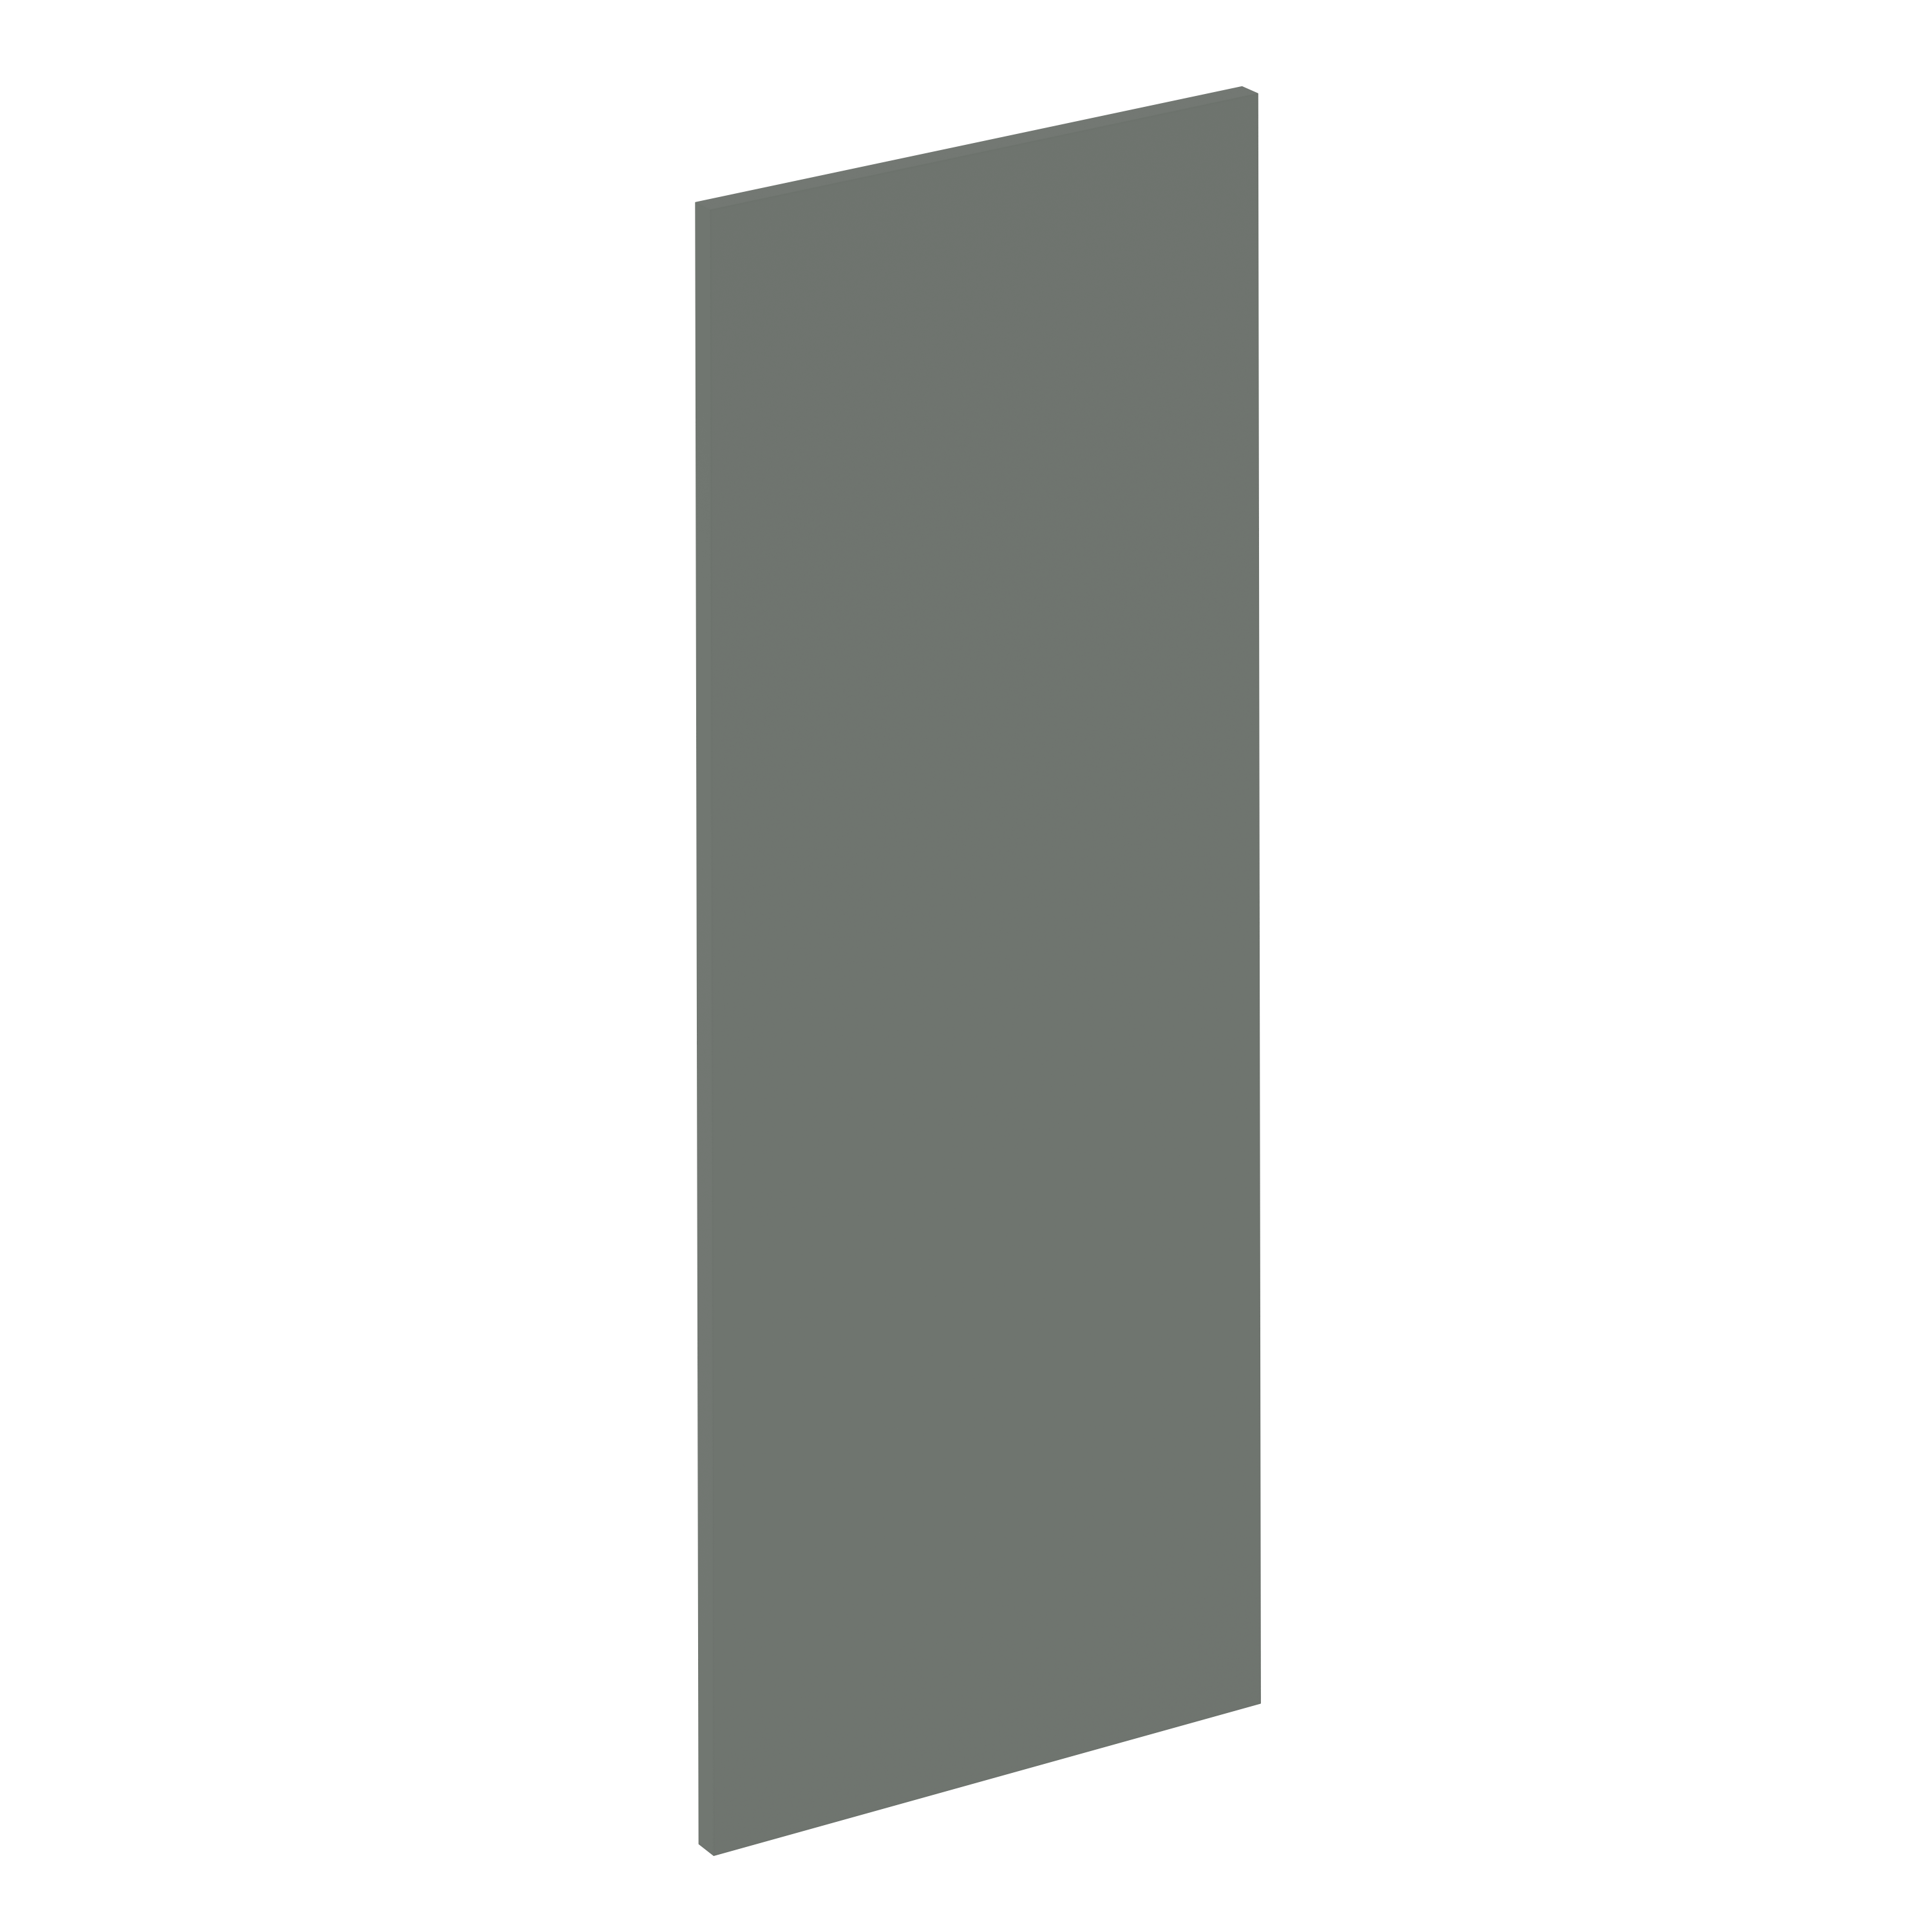 Puerta para mueble de cocina vienne verde mate h 102.4 x l 40 cm